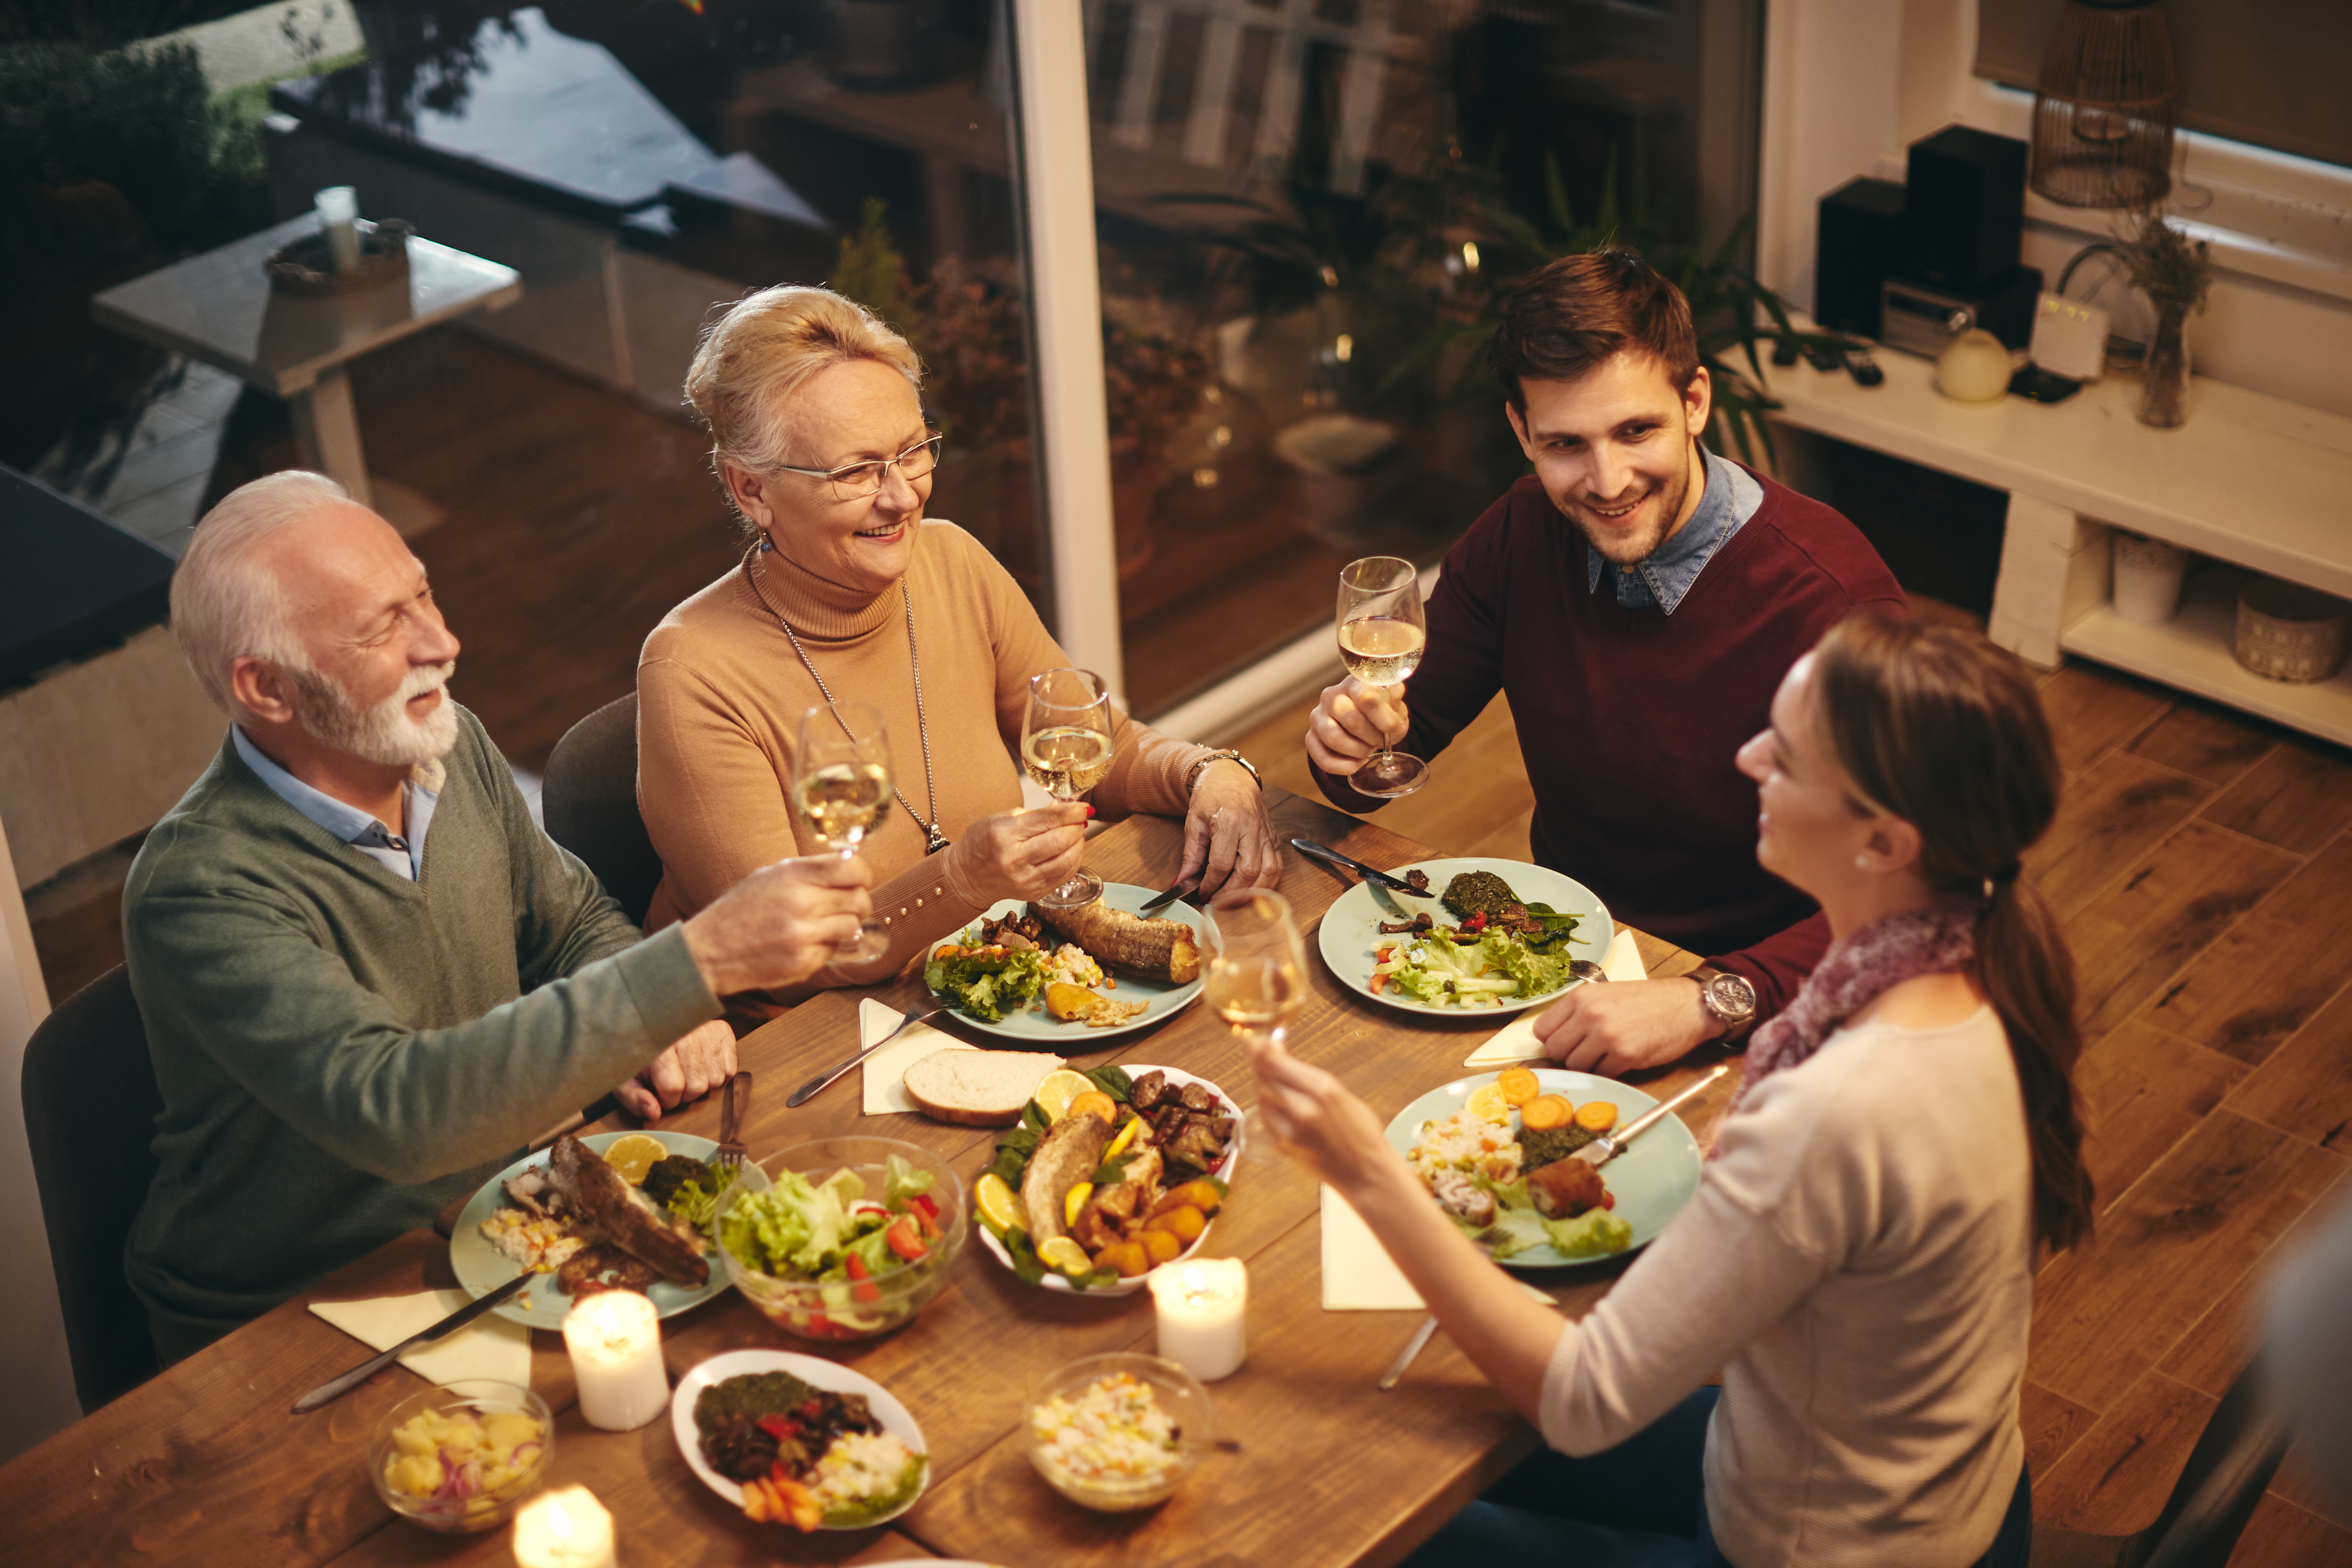 Les membres d'une famille en train de dîner | Source : Shutterstock